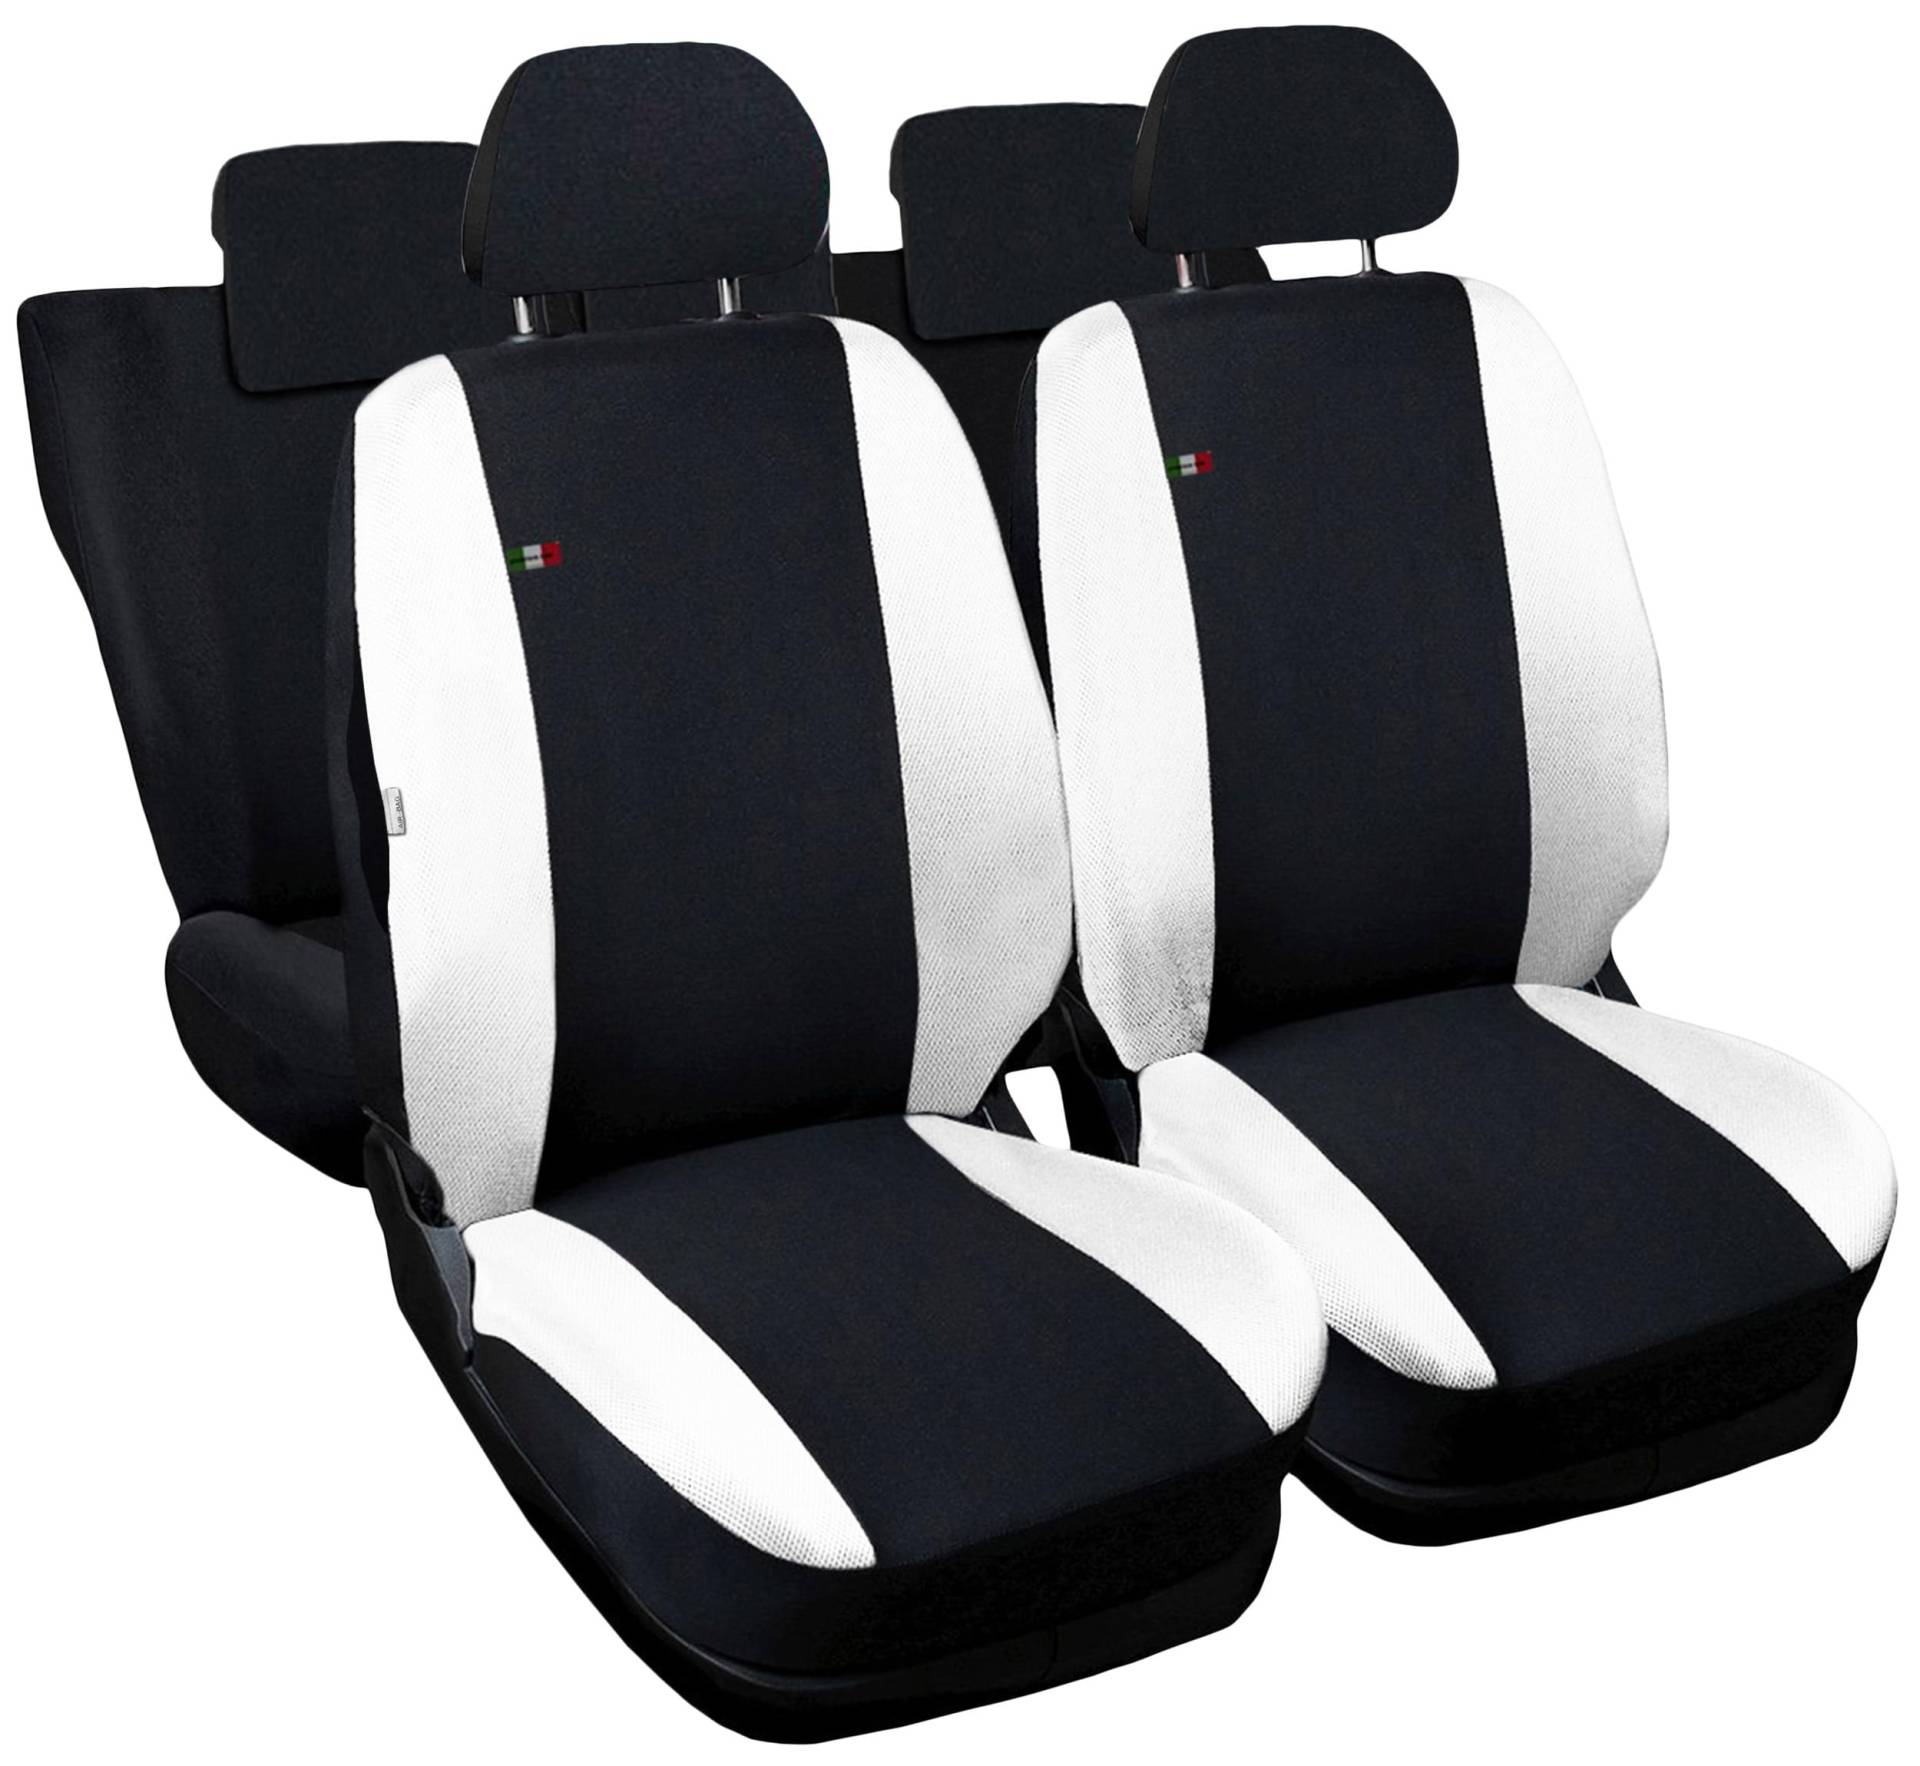 Auto Accessori Lupex - Sitzbezüge für Autositz, kompatibel Autositzbezüge für Duster, schwarz weiß, Made in Italy, Set Sitzbezüge für Vorder- und Rücksitze, Polyester-Gewebe, Auto-Innenbezüge von Auto Accessori Lupex